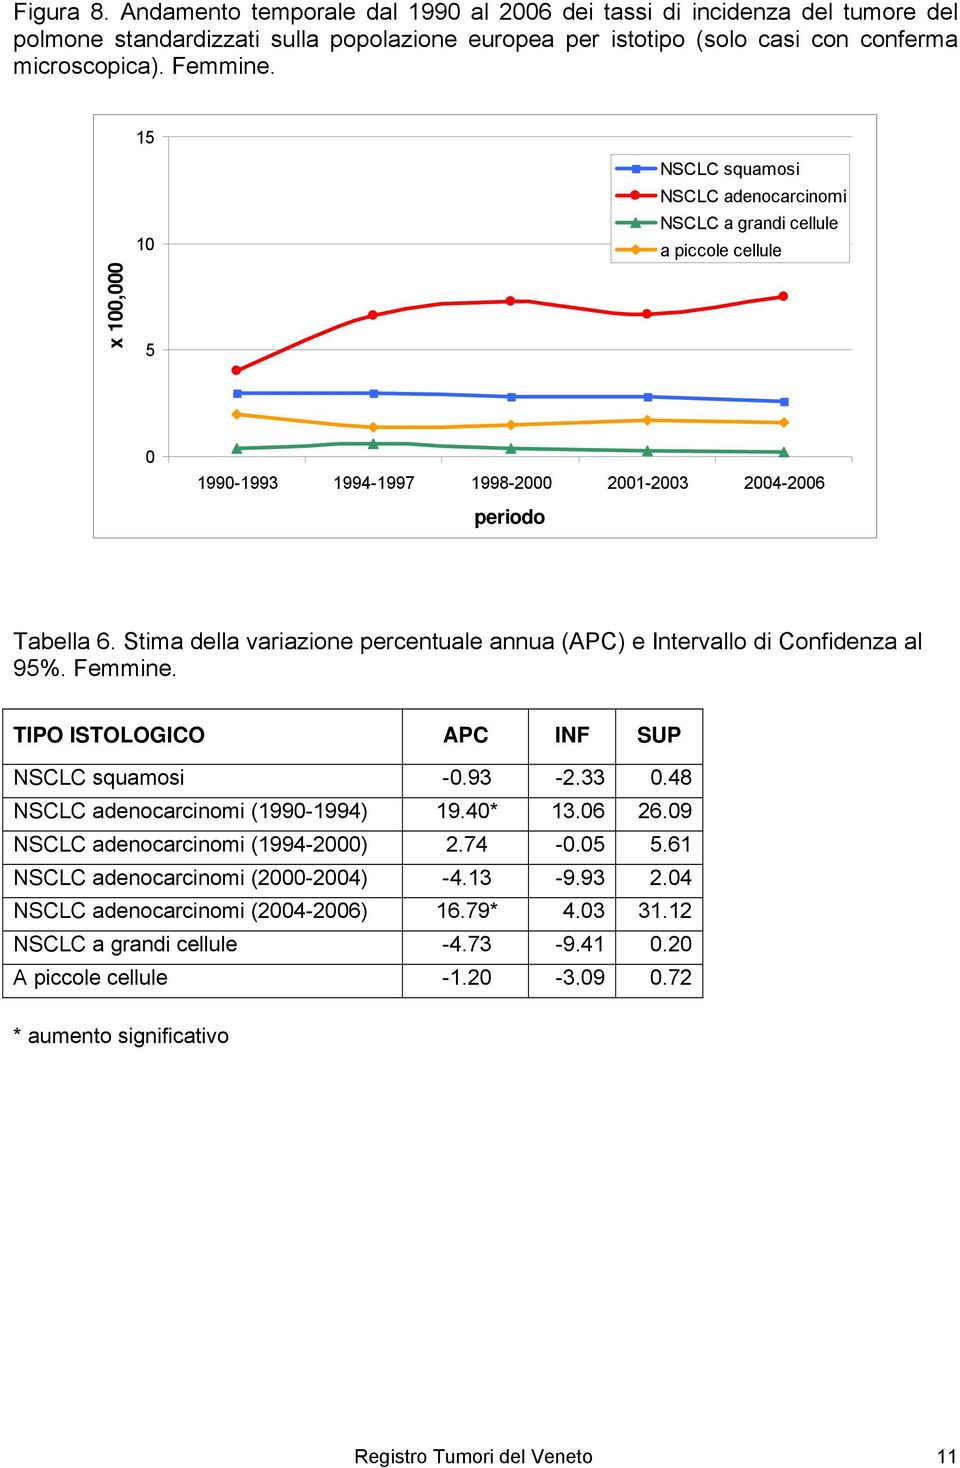 Stima della variazione percentuale annua (APC) e Intervallo di Confidenza al 95%. Femmine. TIPO ISTOLOGICO APC INF SUP NSCLC squamosi -0.93-2.33 0.48 NSCLC adenocarcinomi (1990-1994) 19.40* 13.06 26.